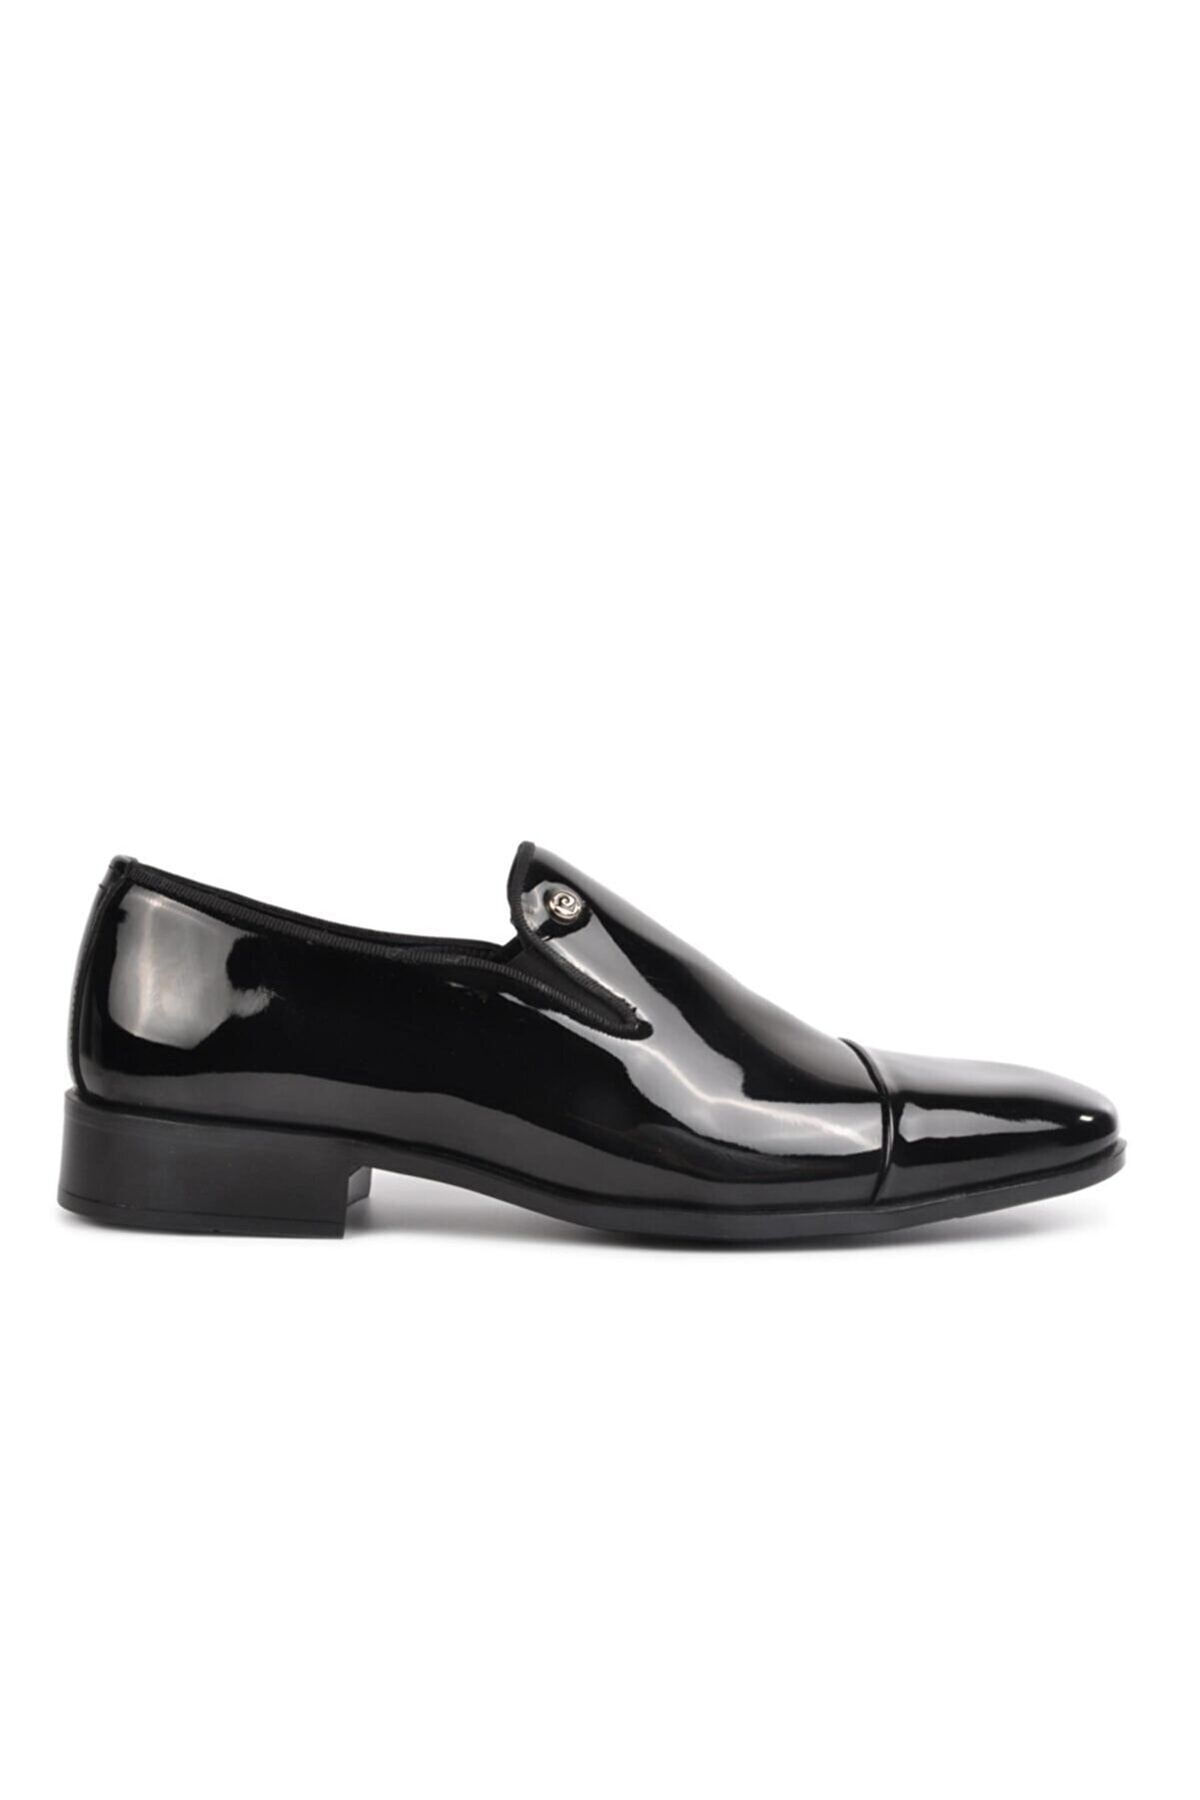 Pierre Cardin Siyah Rugan Erkek Damatlık Klasik Ayakkabı